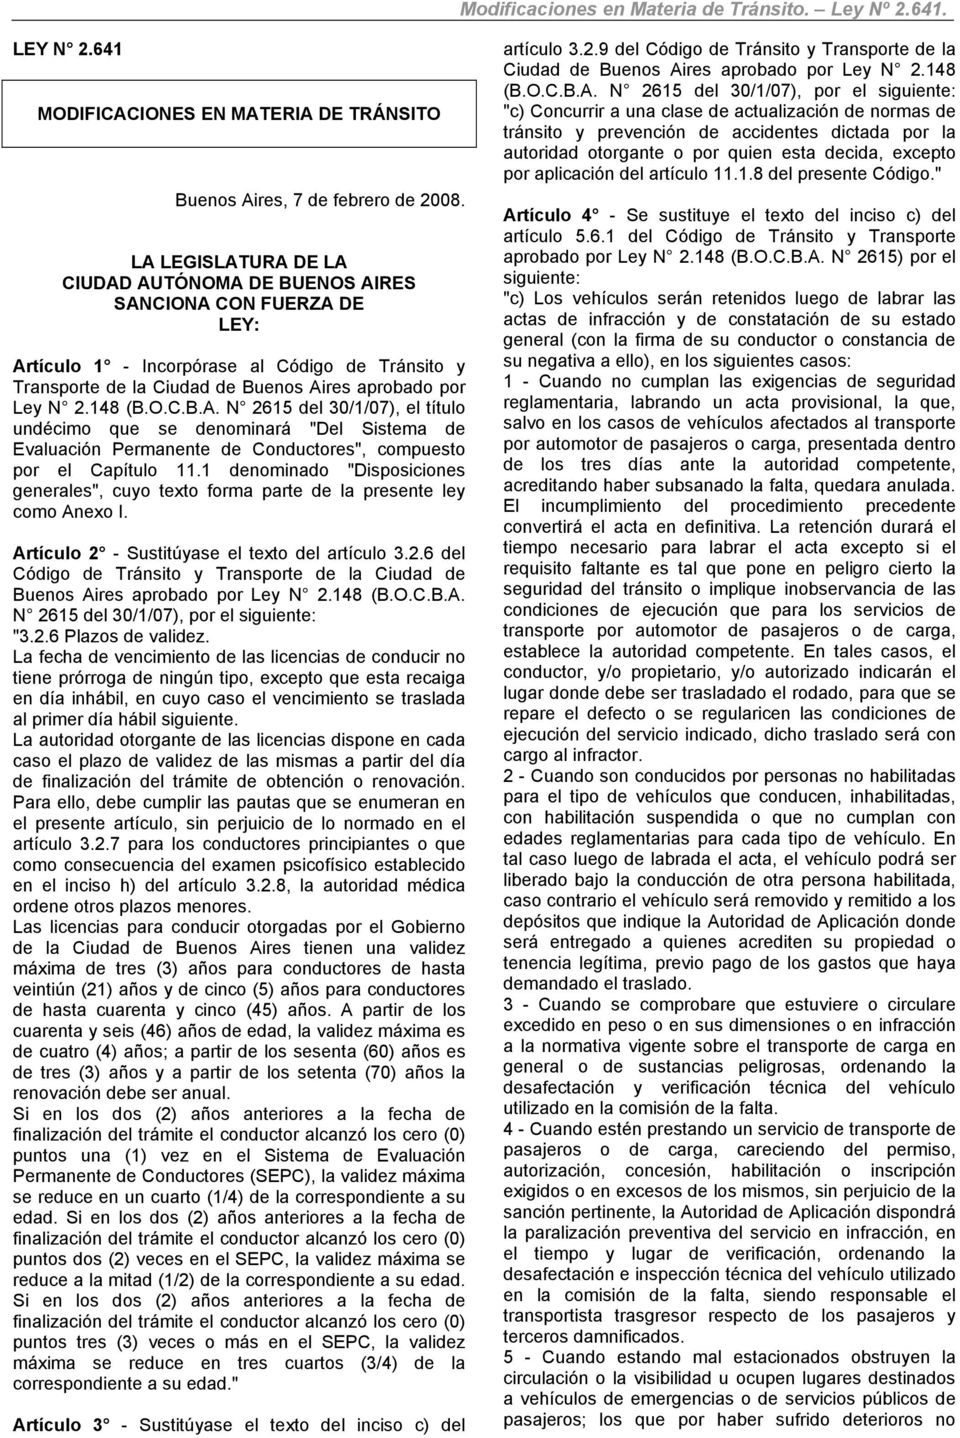 1 denominado "Disposiciones generales", cuyo texto forma parte de la presente ley como Anexo I. Artículo 2 - Sustitúyase el texto del artículo 3.2.6 del Código de Tránsito y Transporte de la Ciudad de Buenos Aires aprobado por Ley N 2.